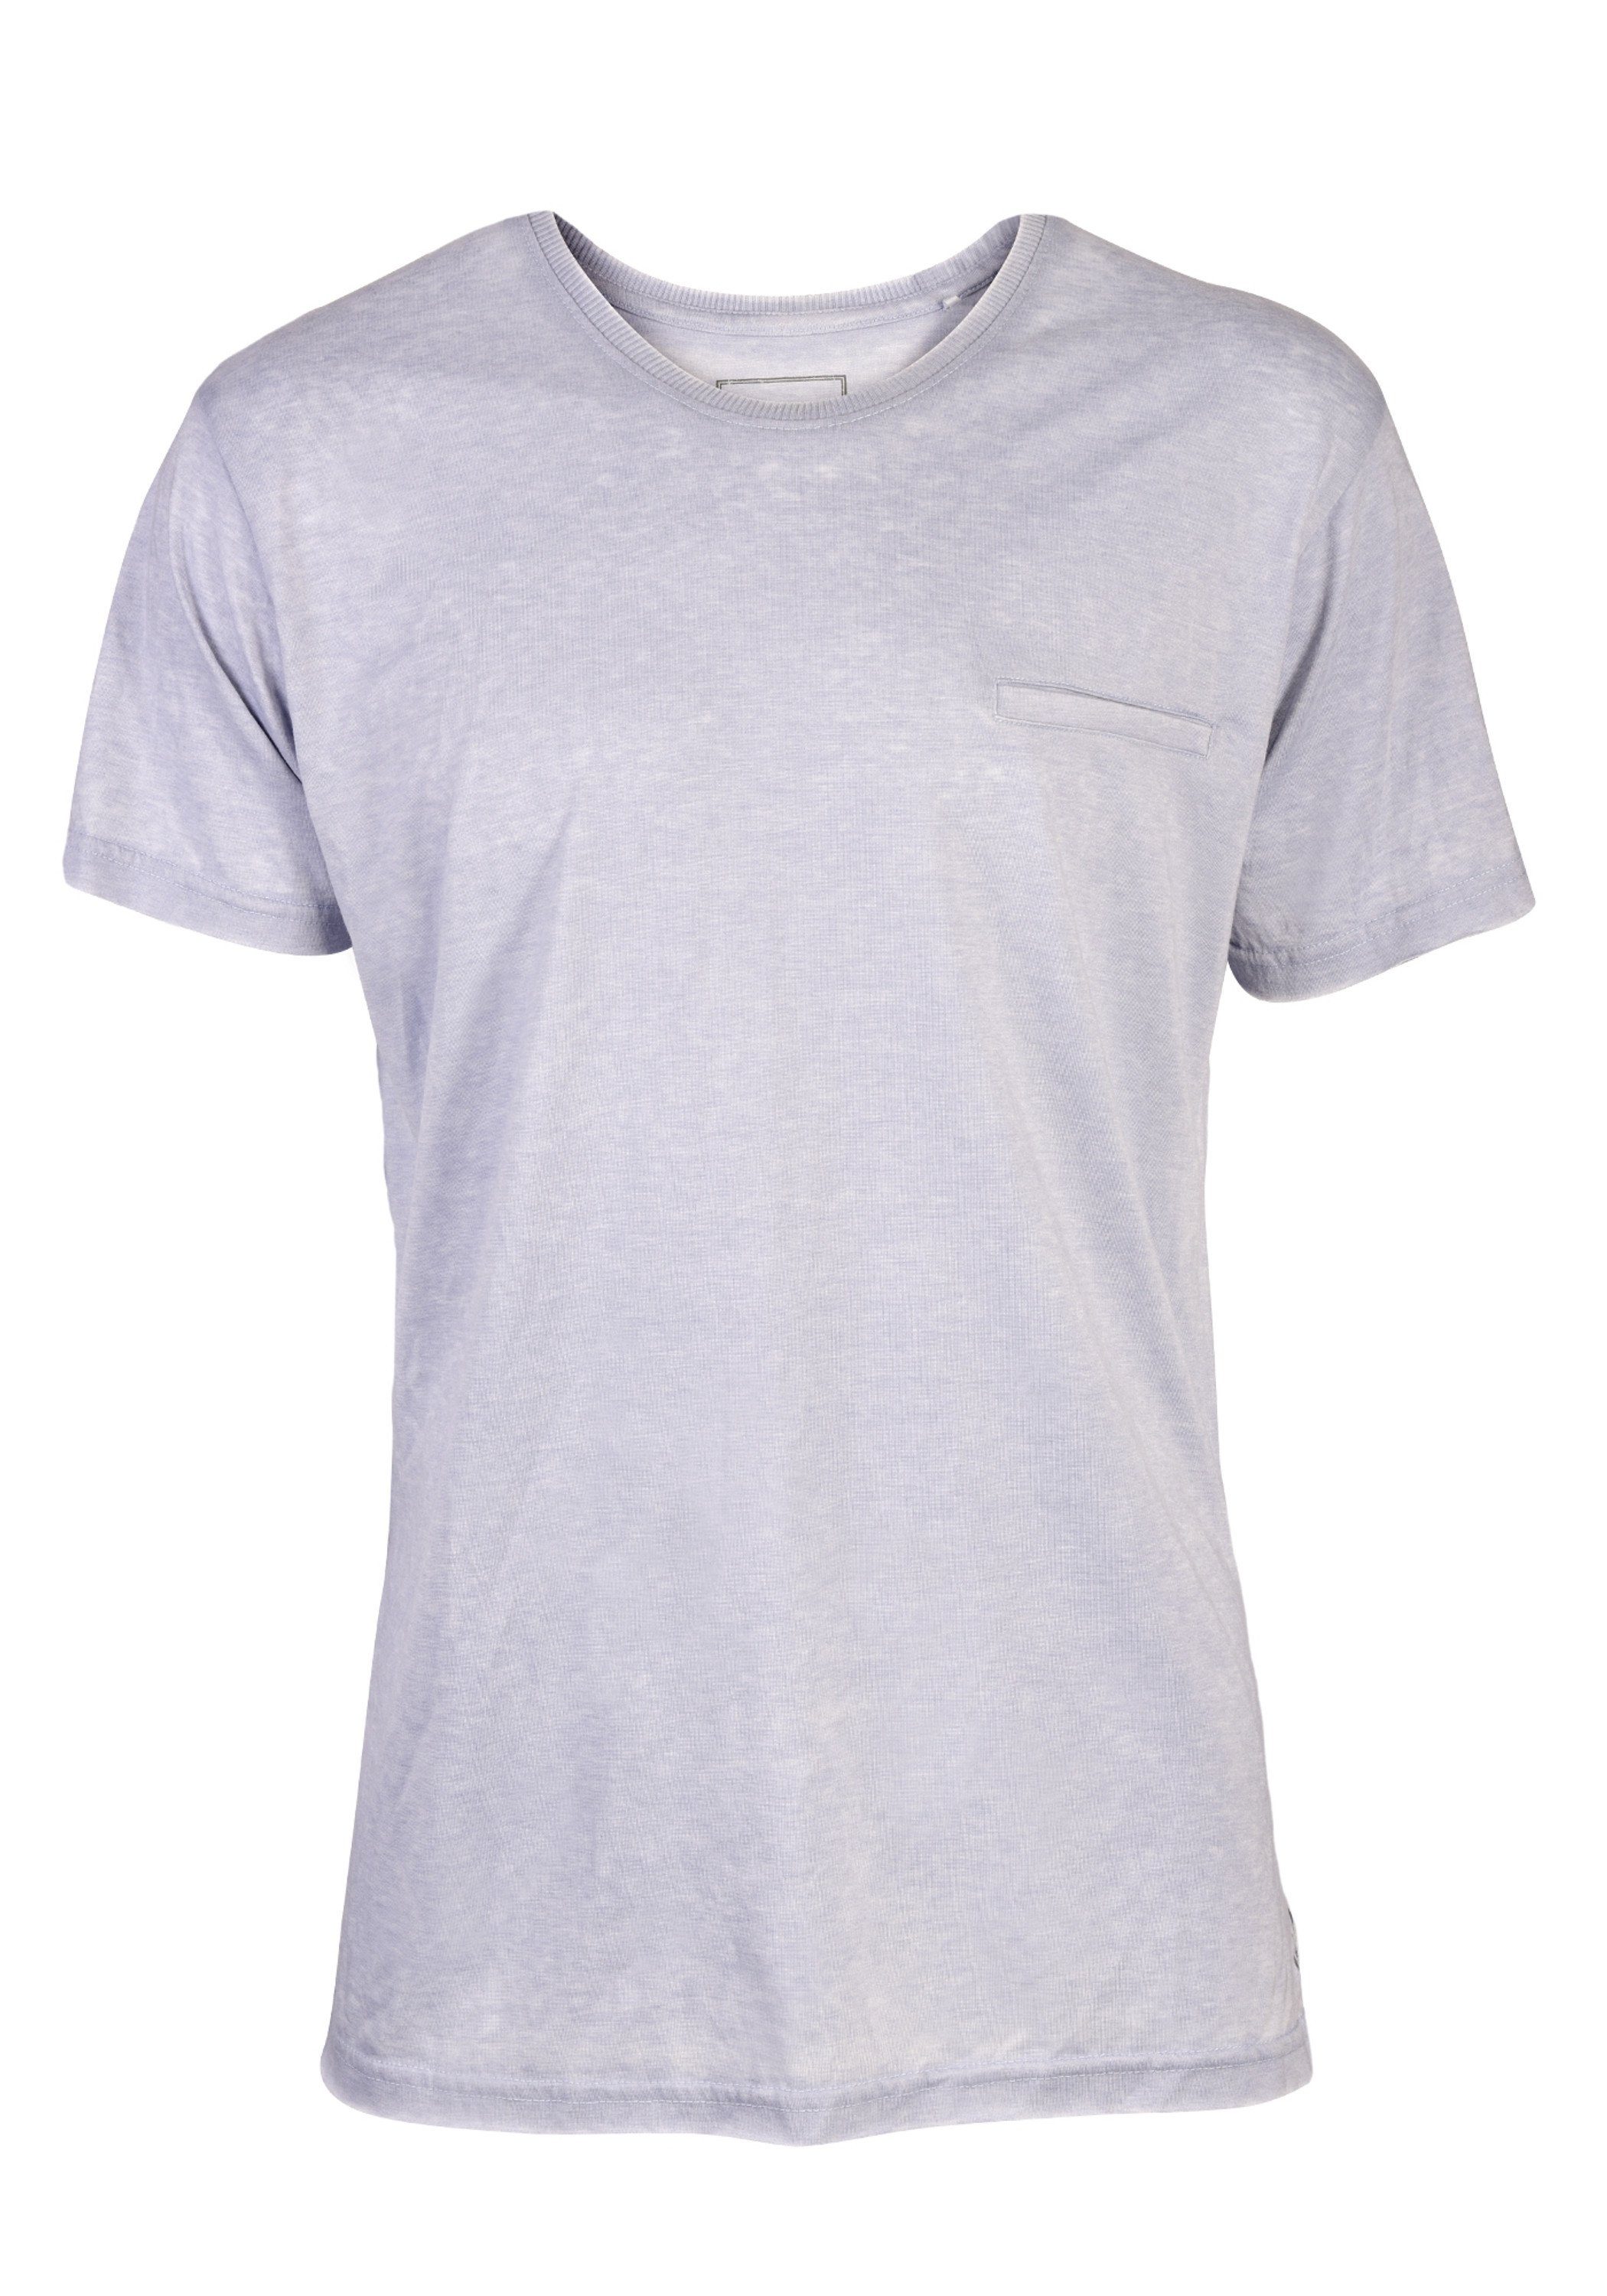 DAILY´S T-Shirt HARDY: Herren T-Shirt mit Rundhalsausschnitt Himmelsblau